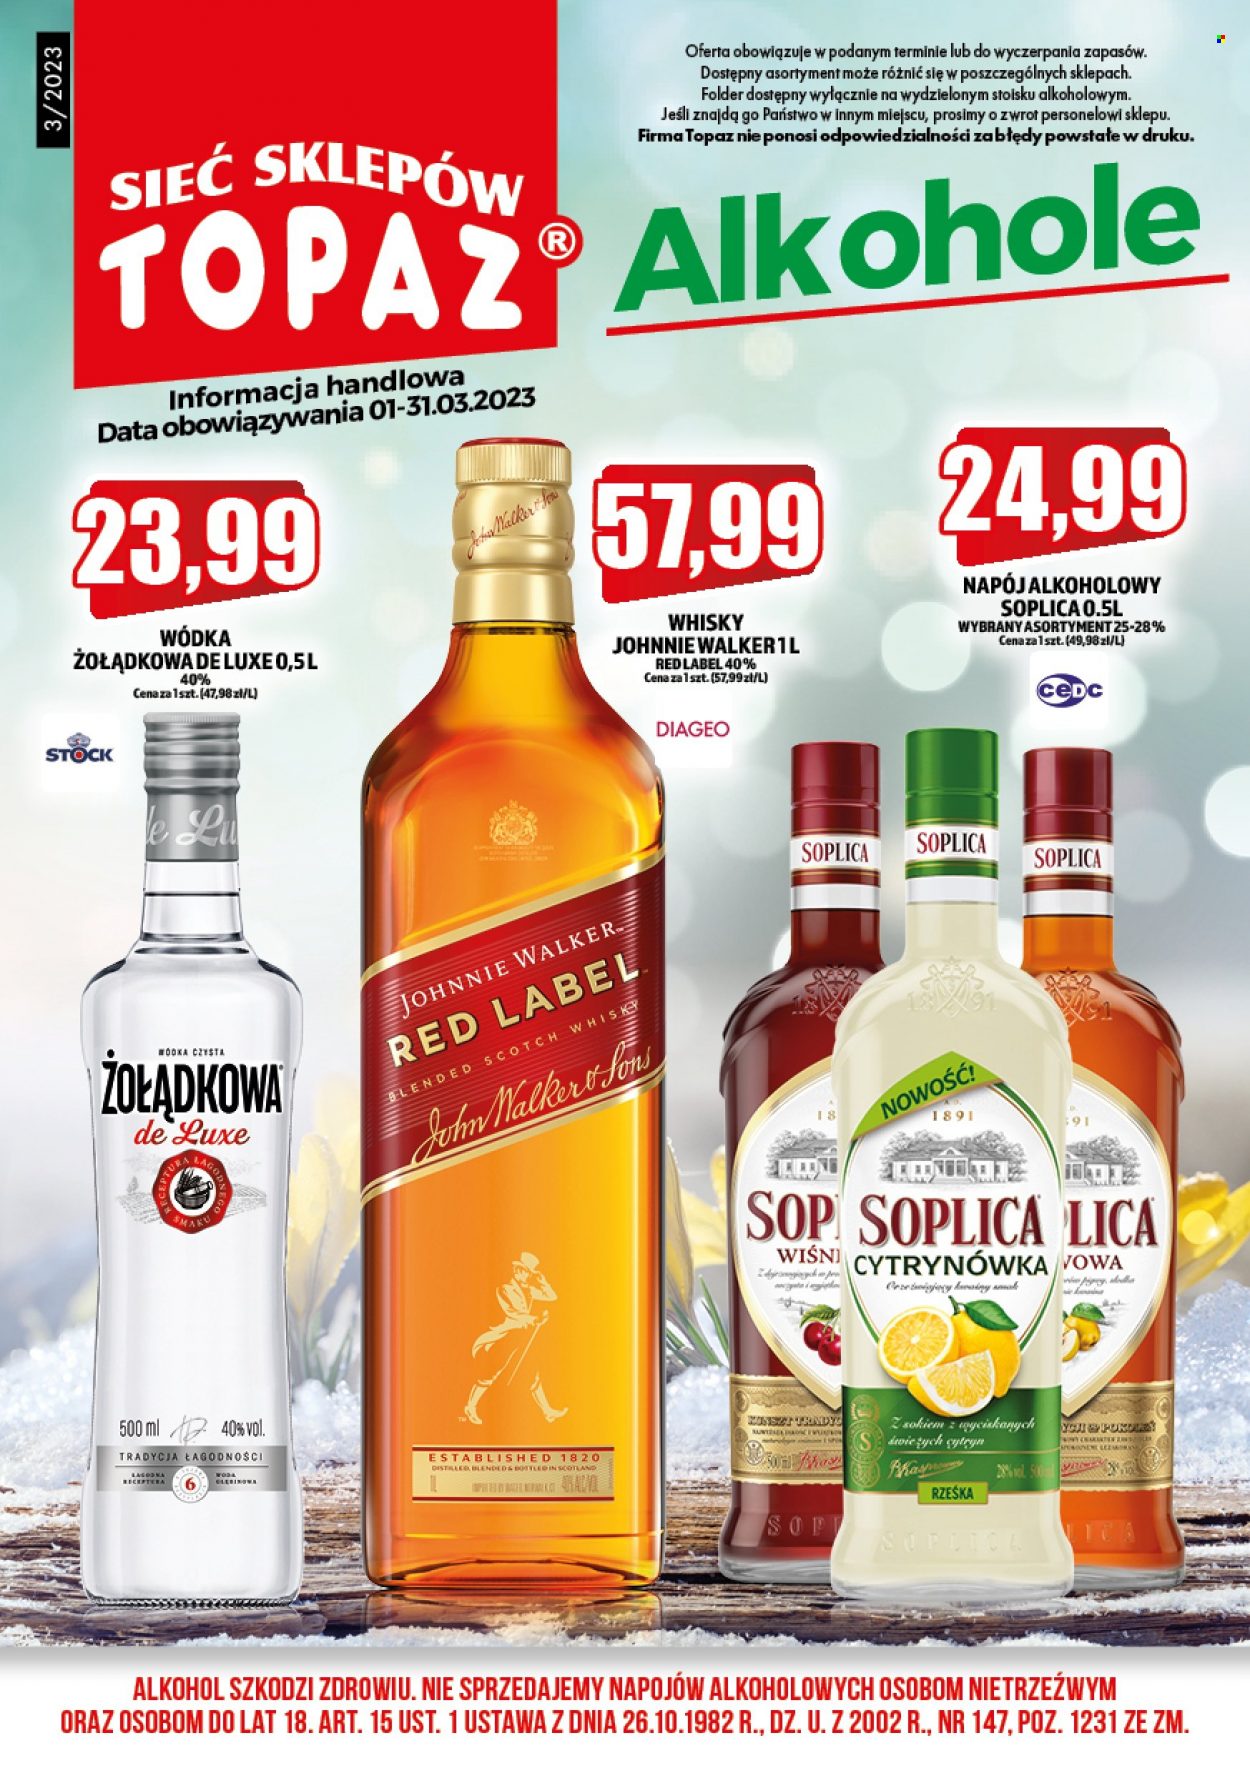 Gazetka Topaz - 1.03.2023 - 31.03.2023 - Produkty w akcji - alkohole, Stock, Soplica, Johnnie Walker, Żołądkowa, Red Label. Strona 1.